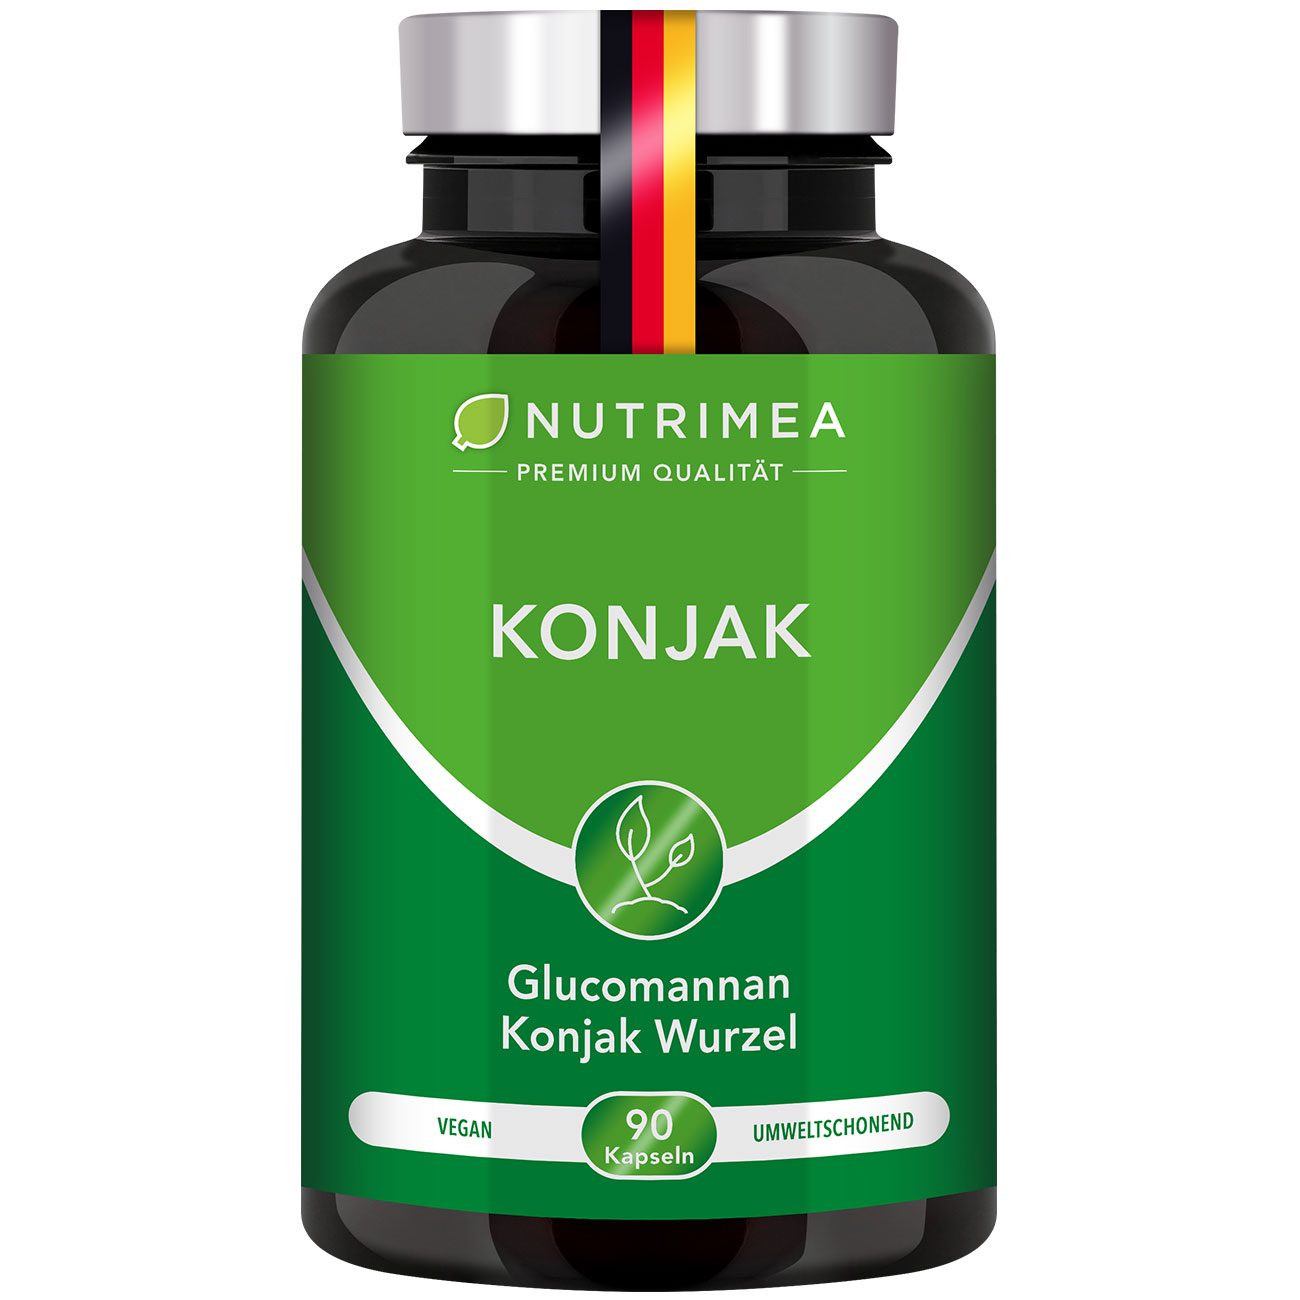 Bild der Verpackung des Supplements Reines Konjak